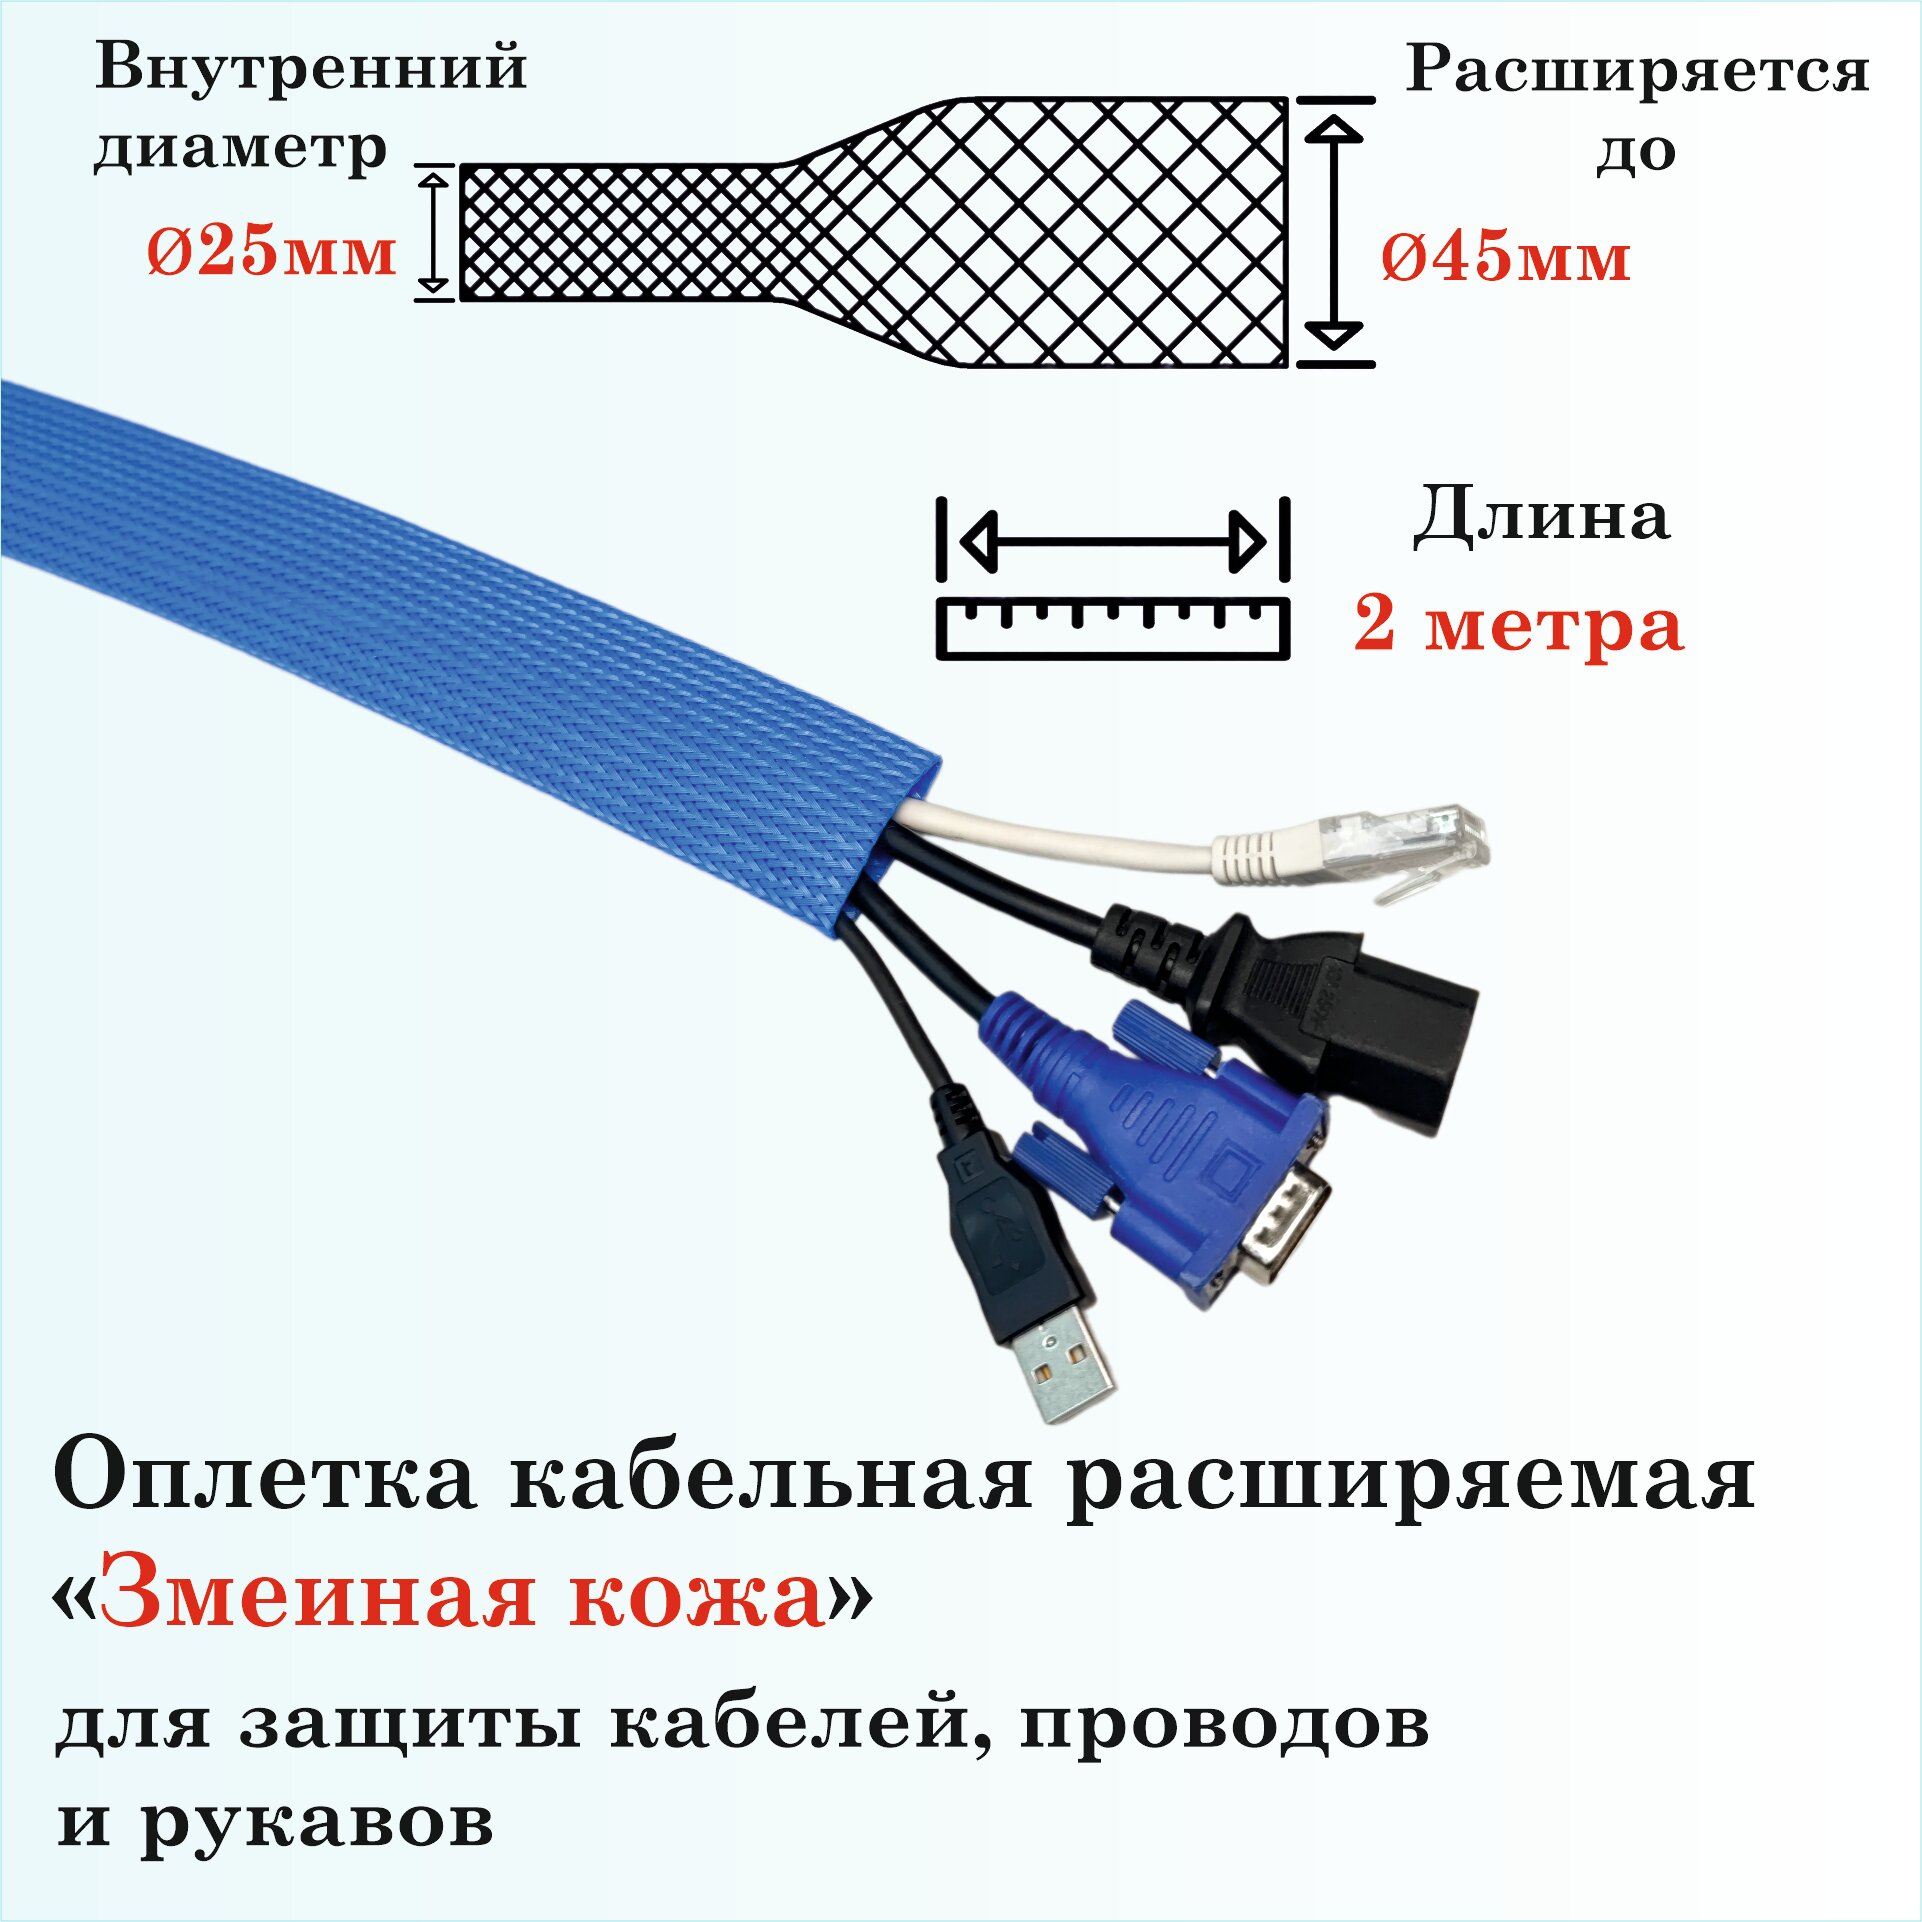 Оплетка кабельная расширяемая для защиты кабелей и проводов "Змеиная кожа" 25мм, 2м, синяя